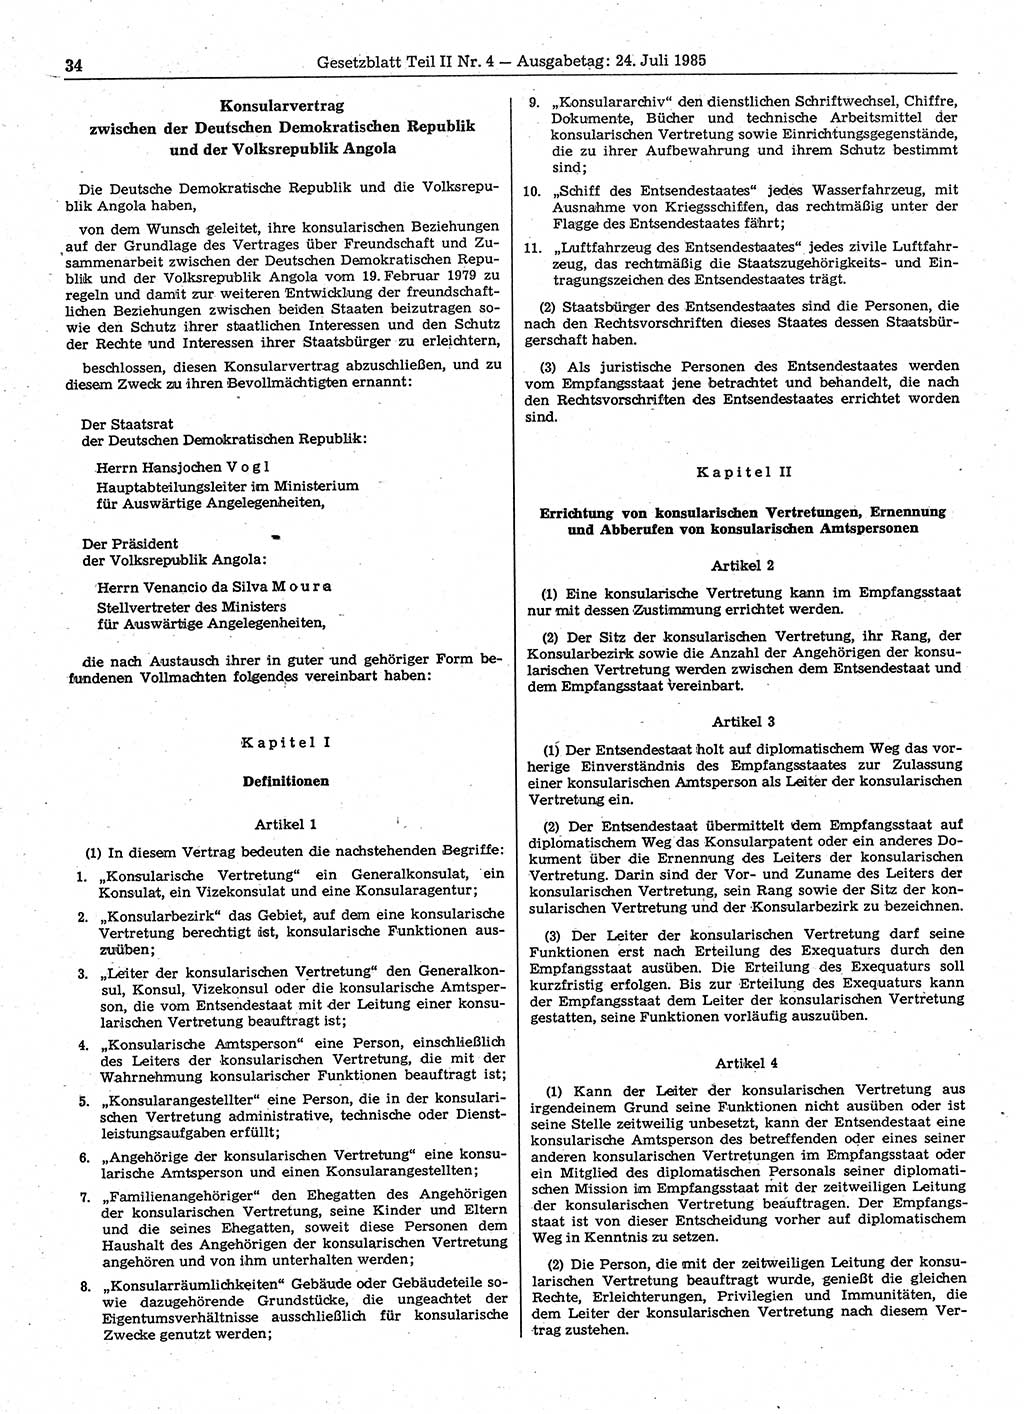 Gesetzblatt (GBl.) der Deutschen Demokratischen Republik (DDR) Teil ⅠⅠ 1985, Seite 34 (GBl. DDR ⅠⅠ 1985, S. 34)